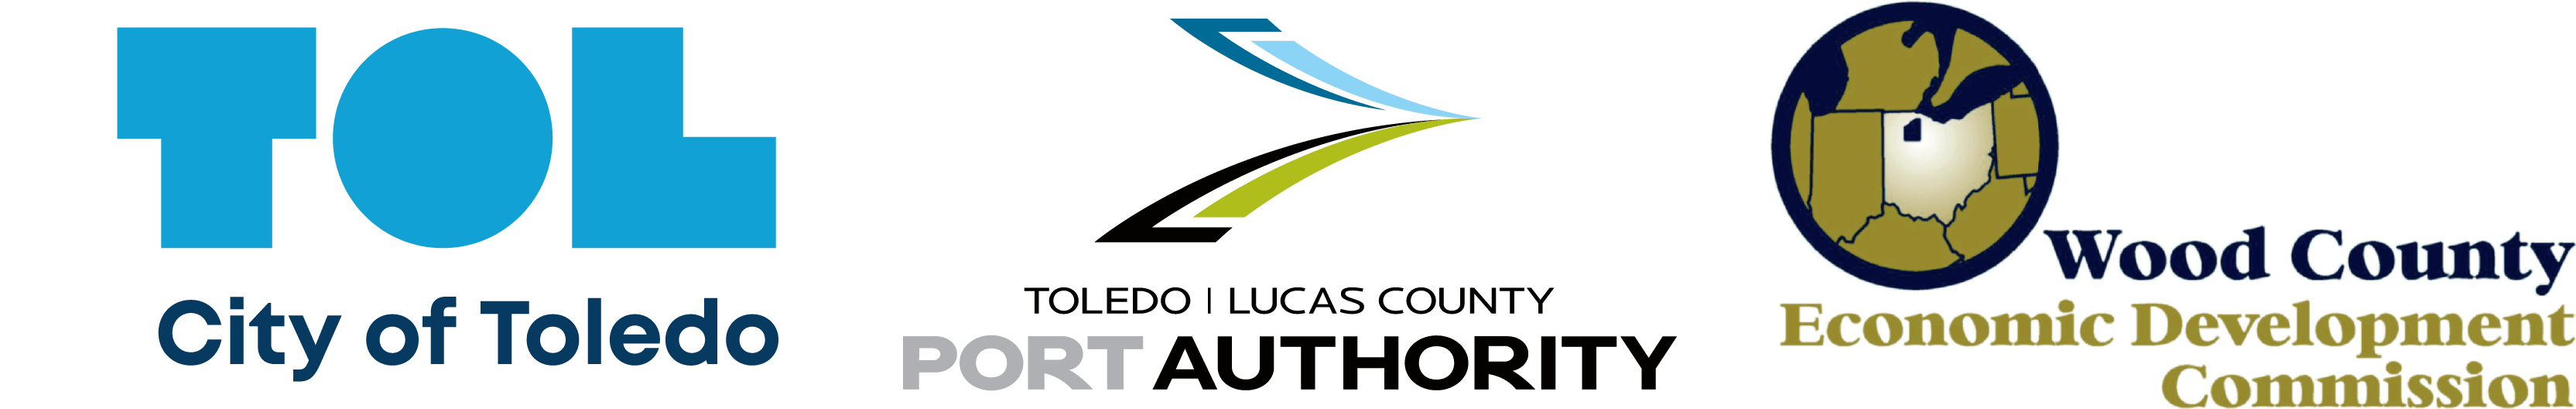 City of Toledo, Toledo-Lucas County Port Authority, and Wood County Economic Development Corporation